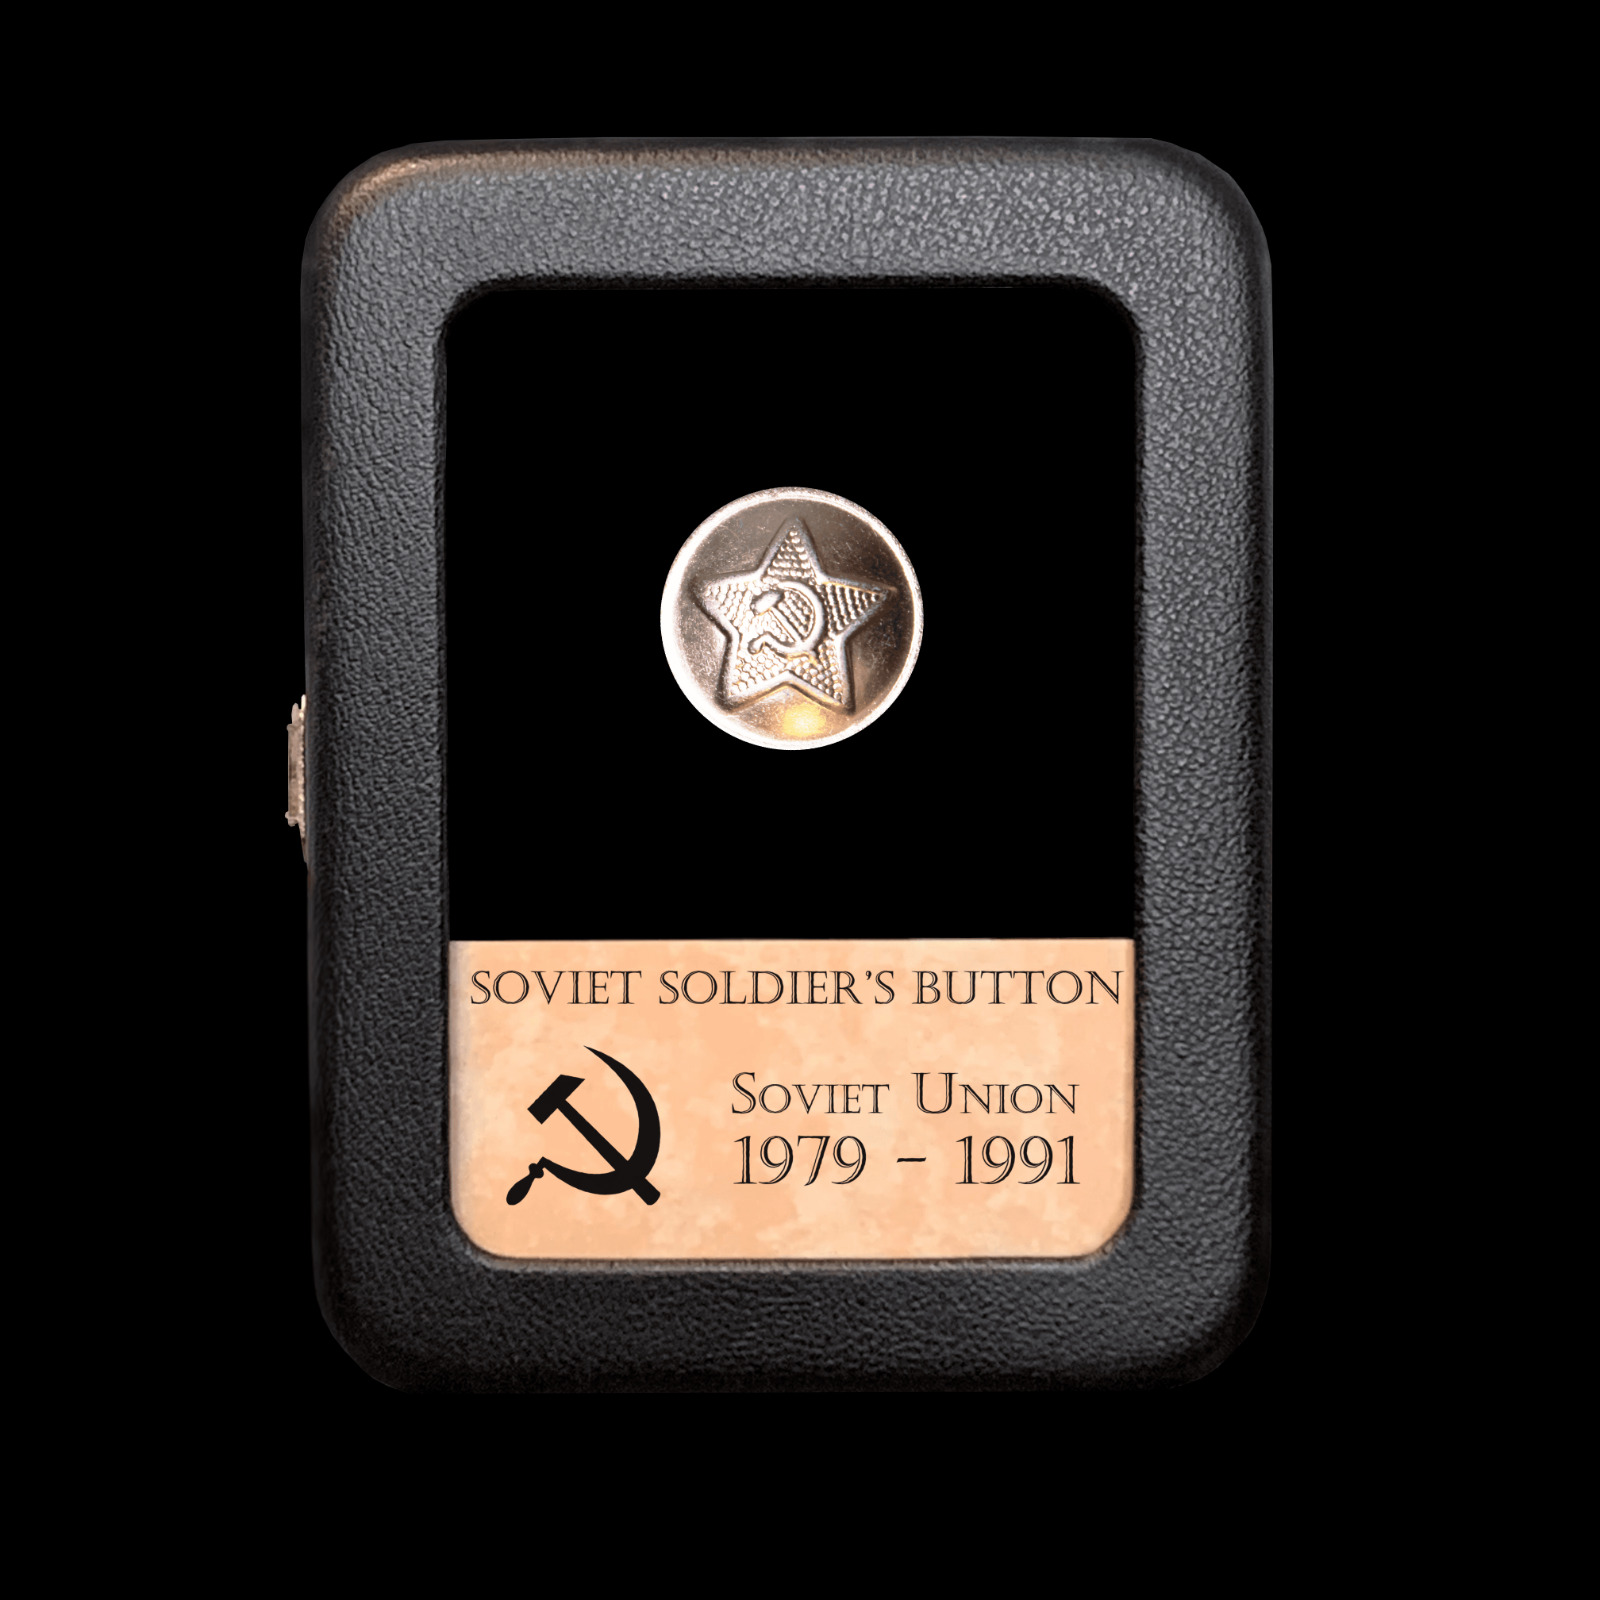 Soviet Union Soldier's Button